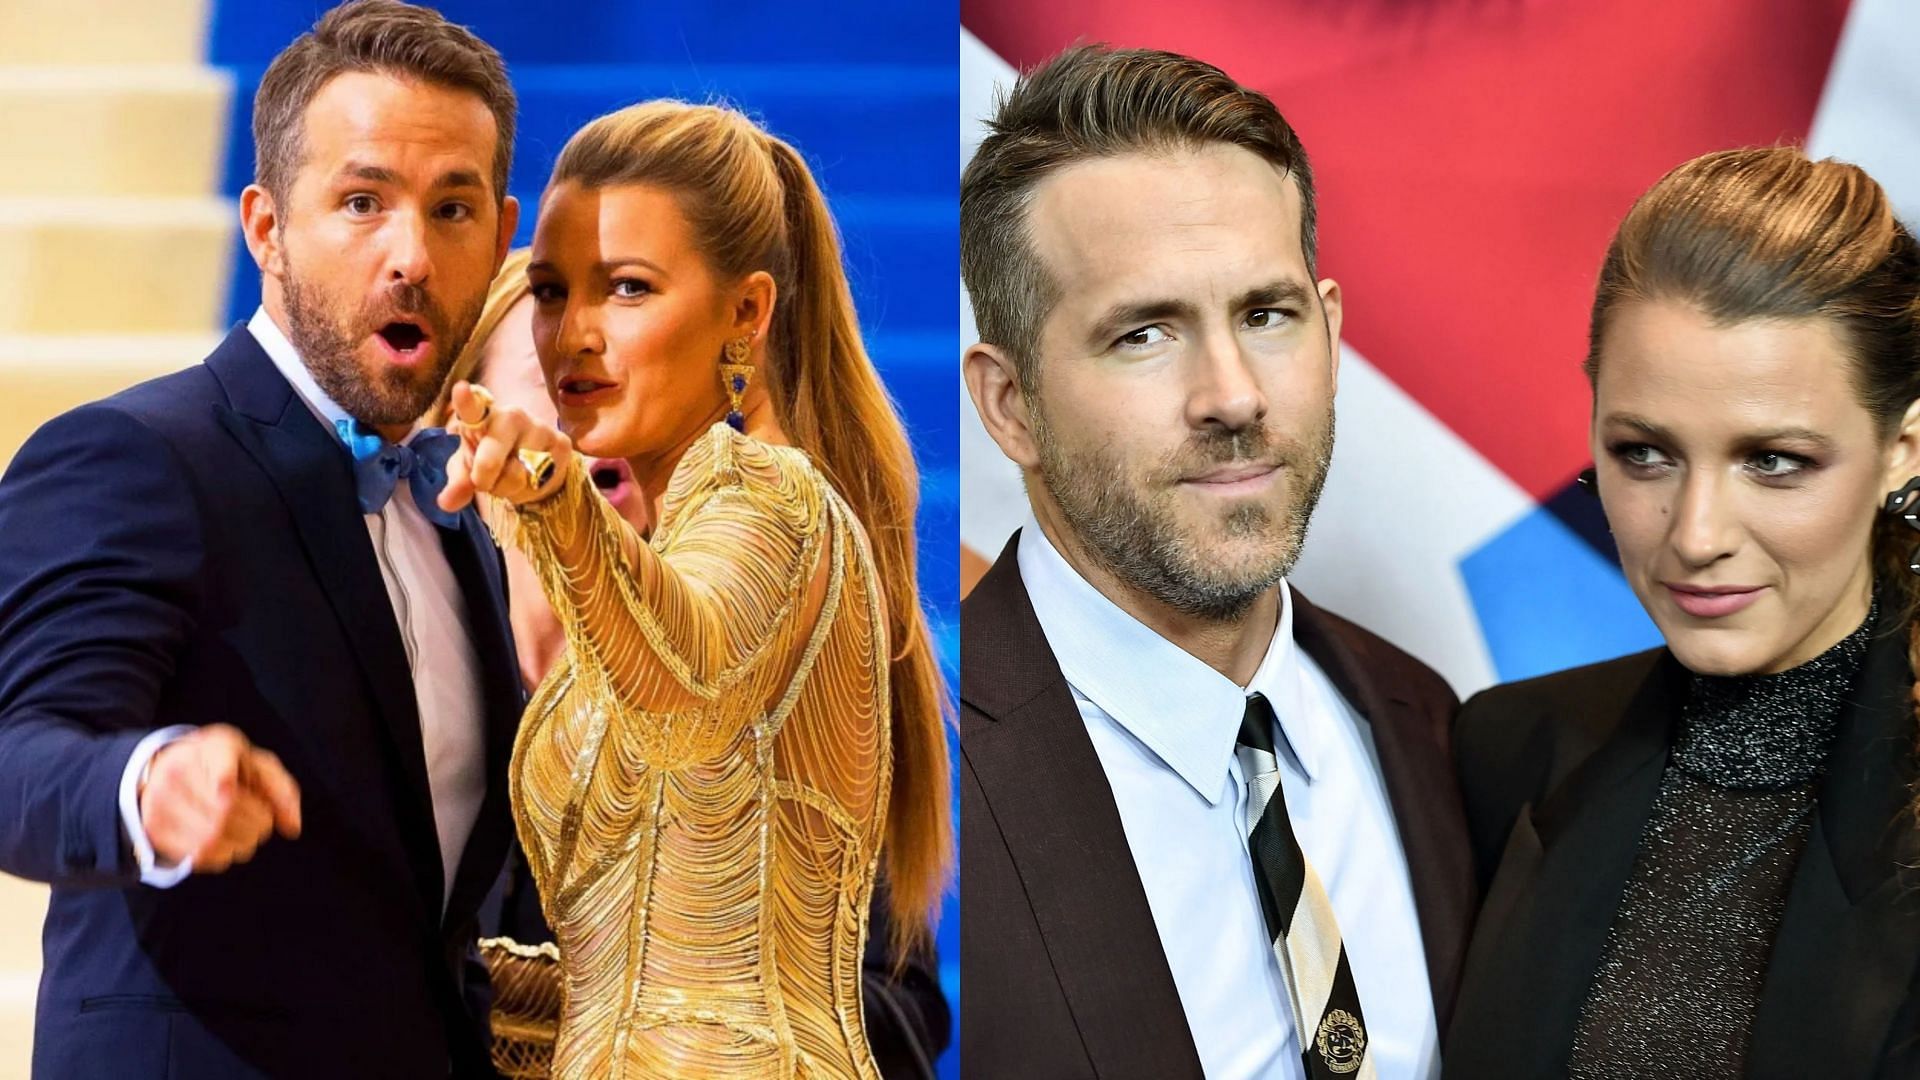 A WWE Superstar had a crush on Ryan Reynolds